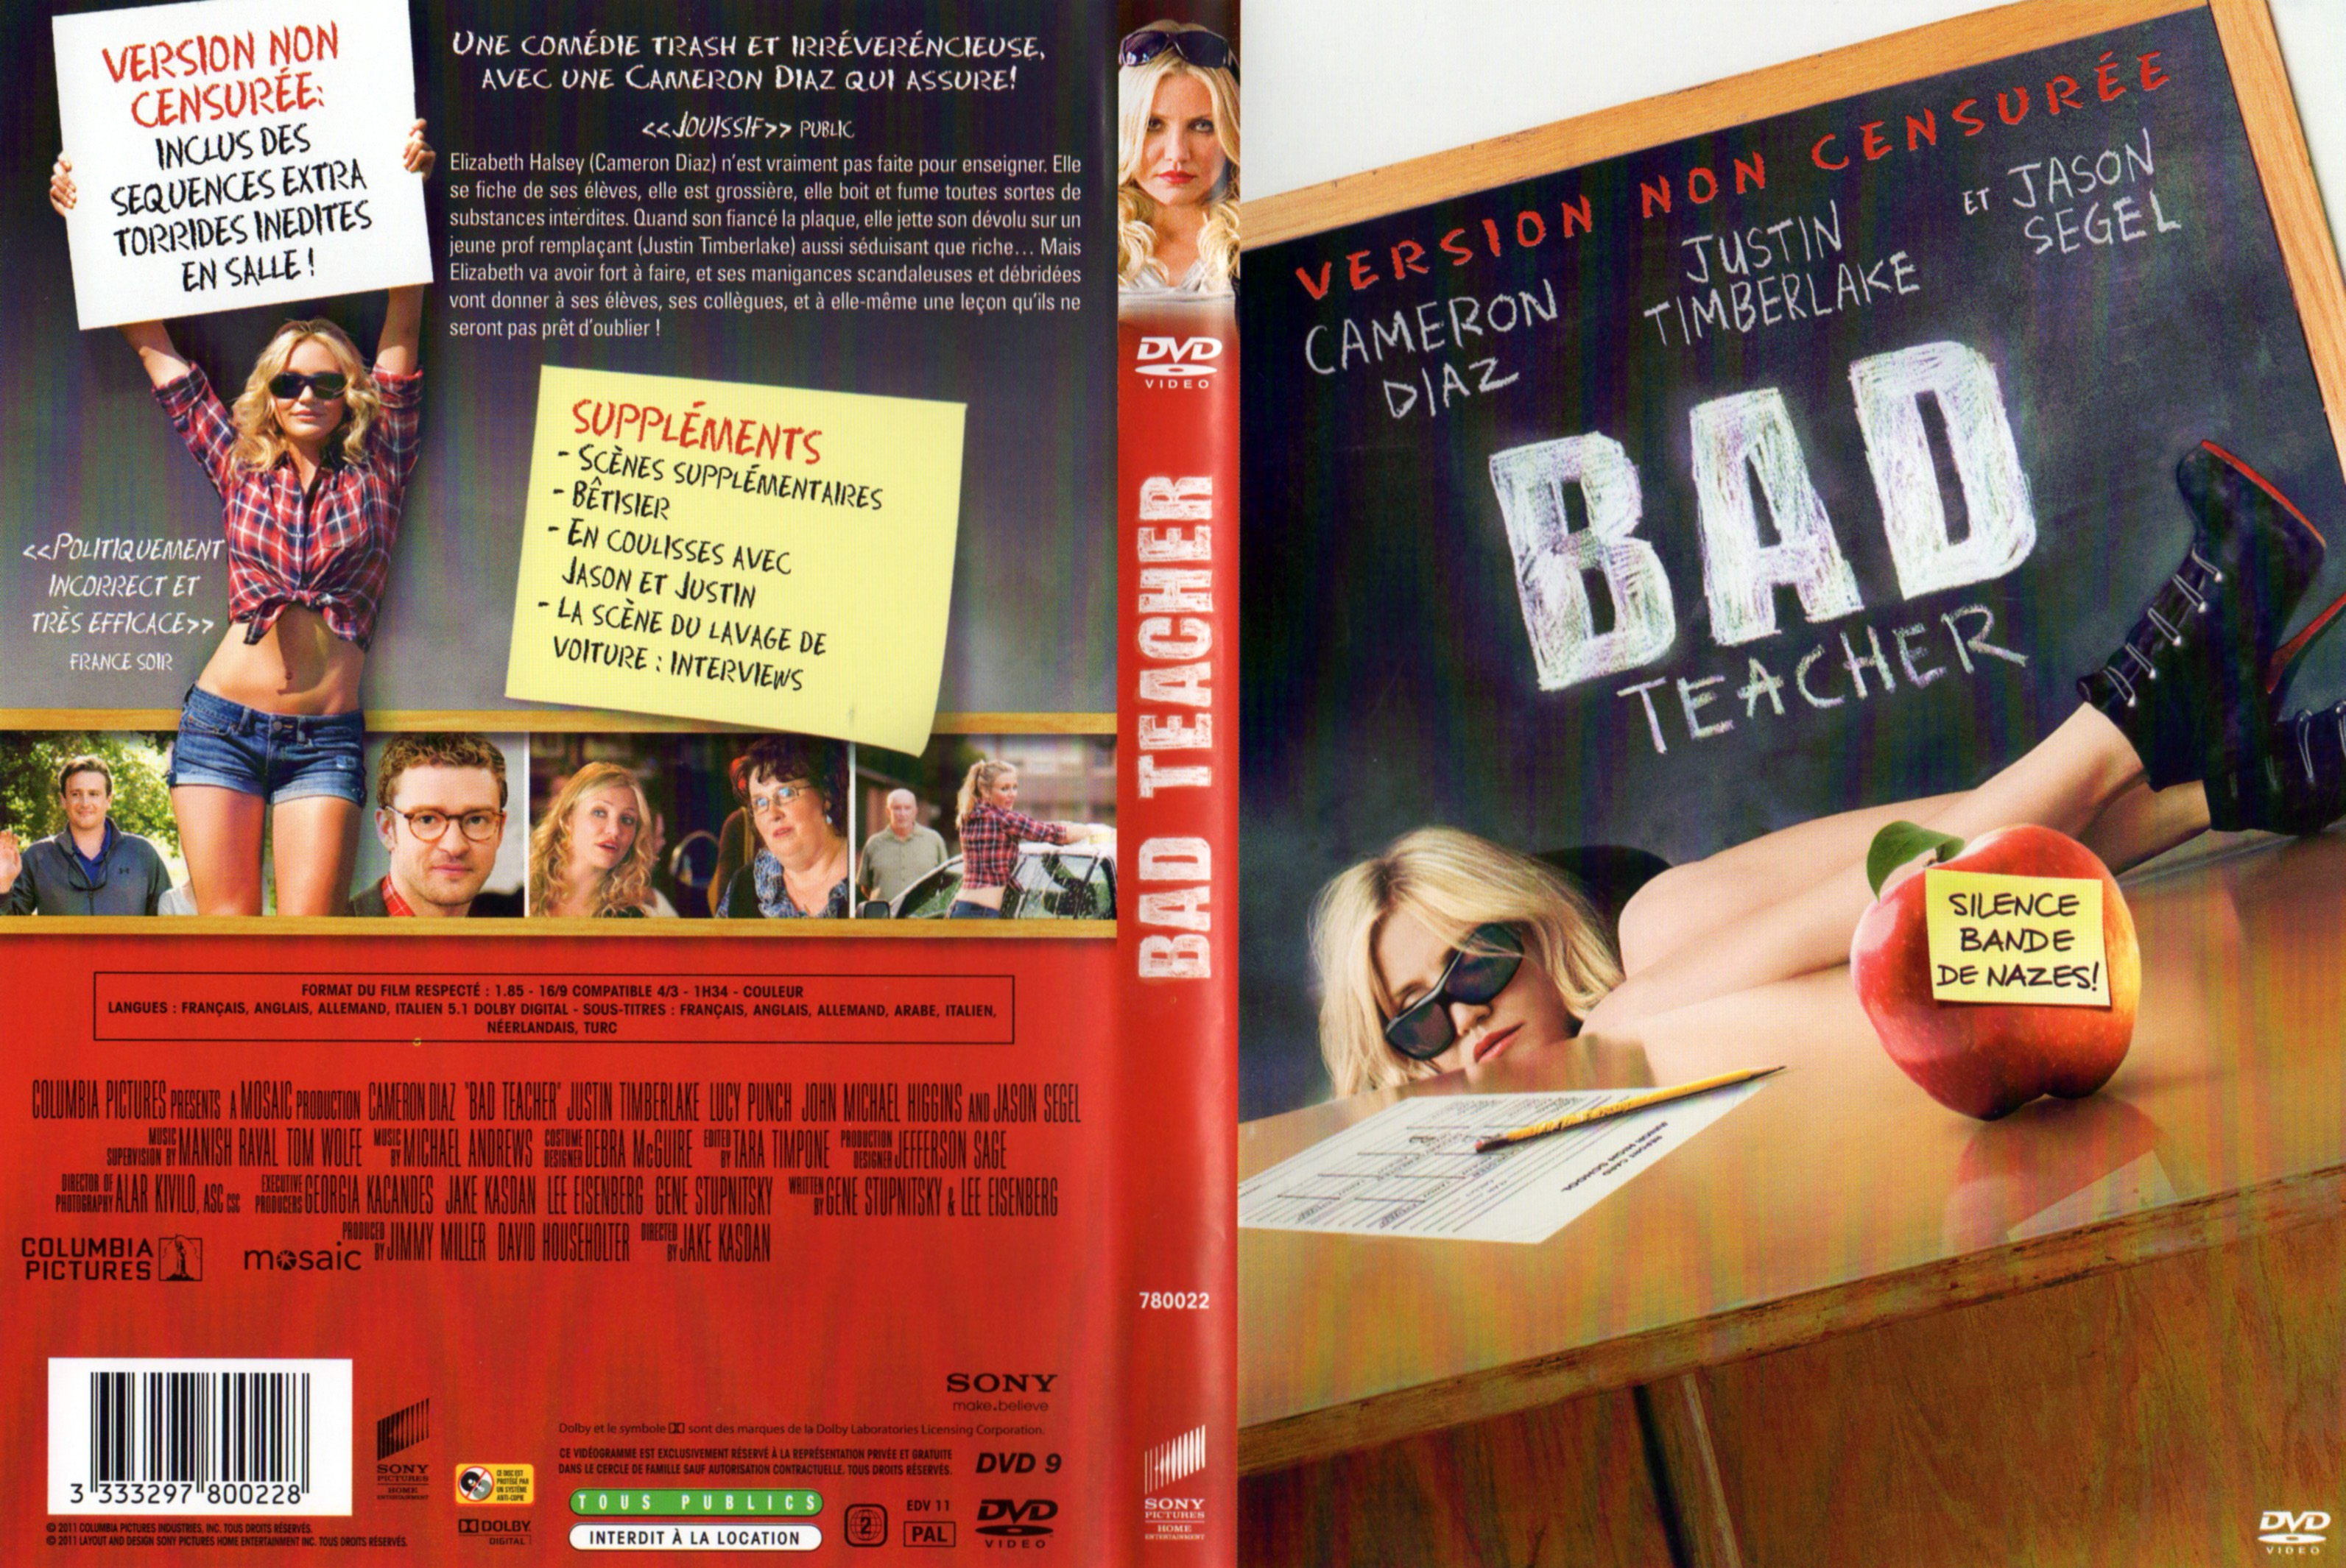 Jaquette DVD Bad teacher